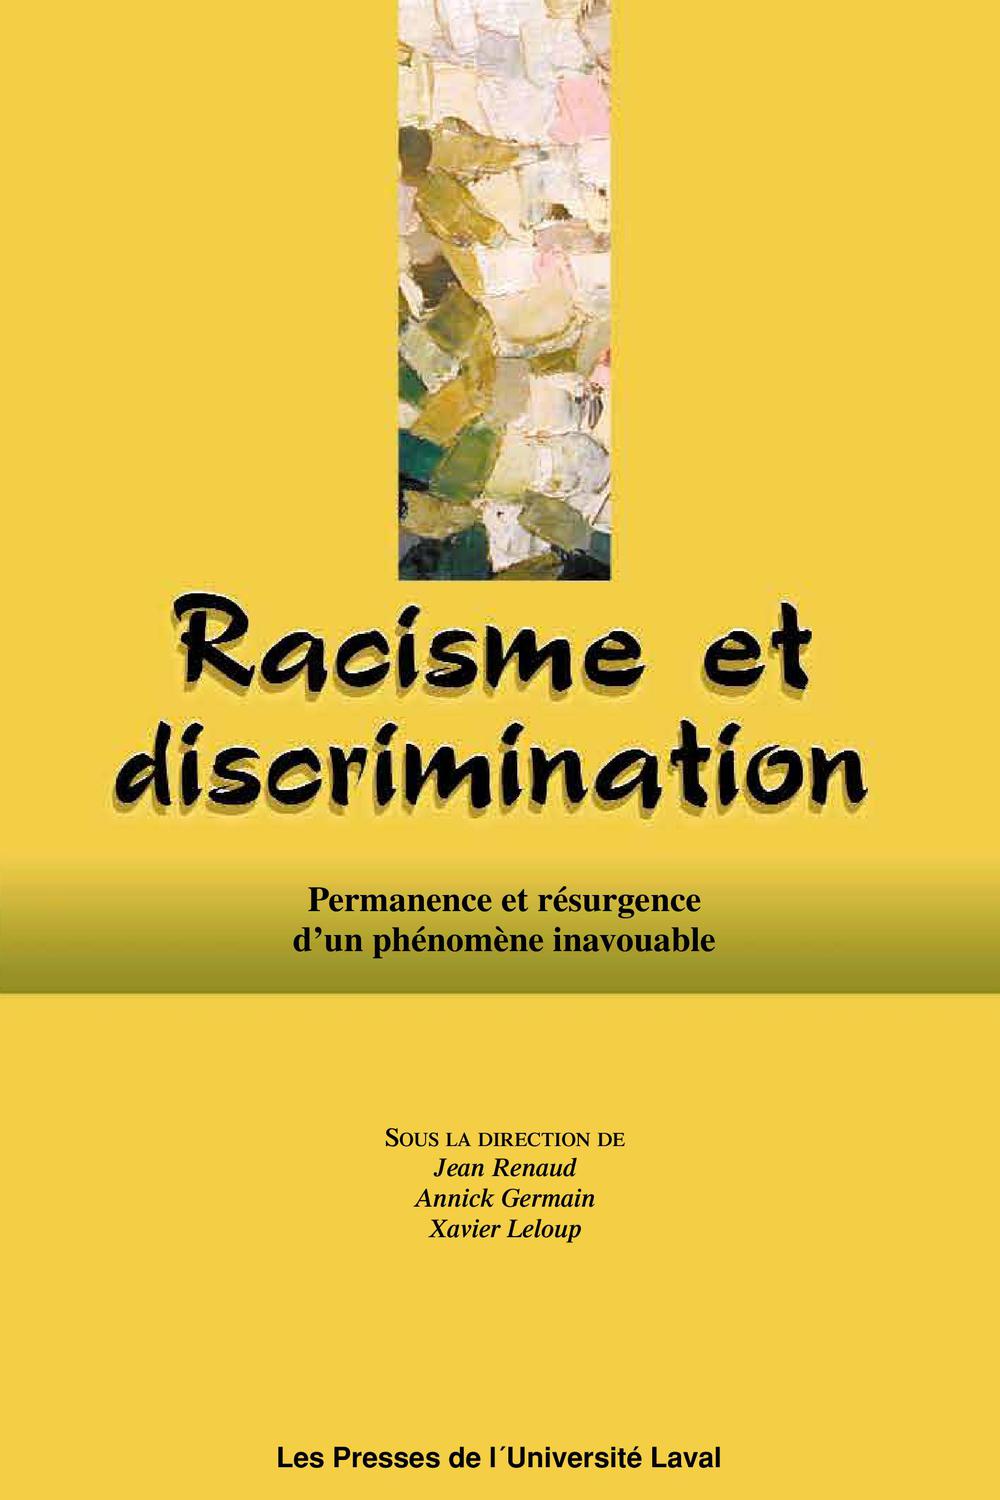 Racisme et discrimination. Permanence et résurgence d'un phénomène inavouable - Jean Renaud